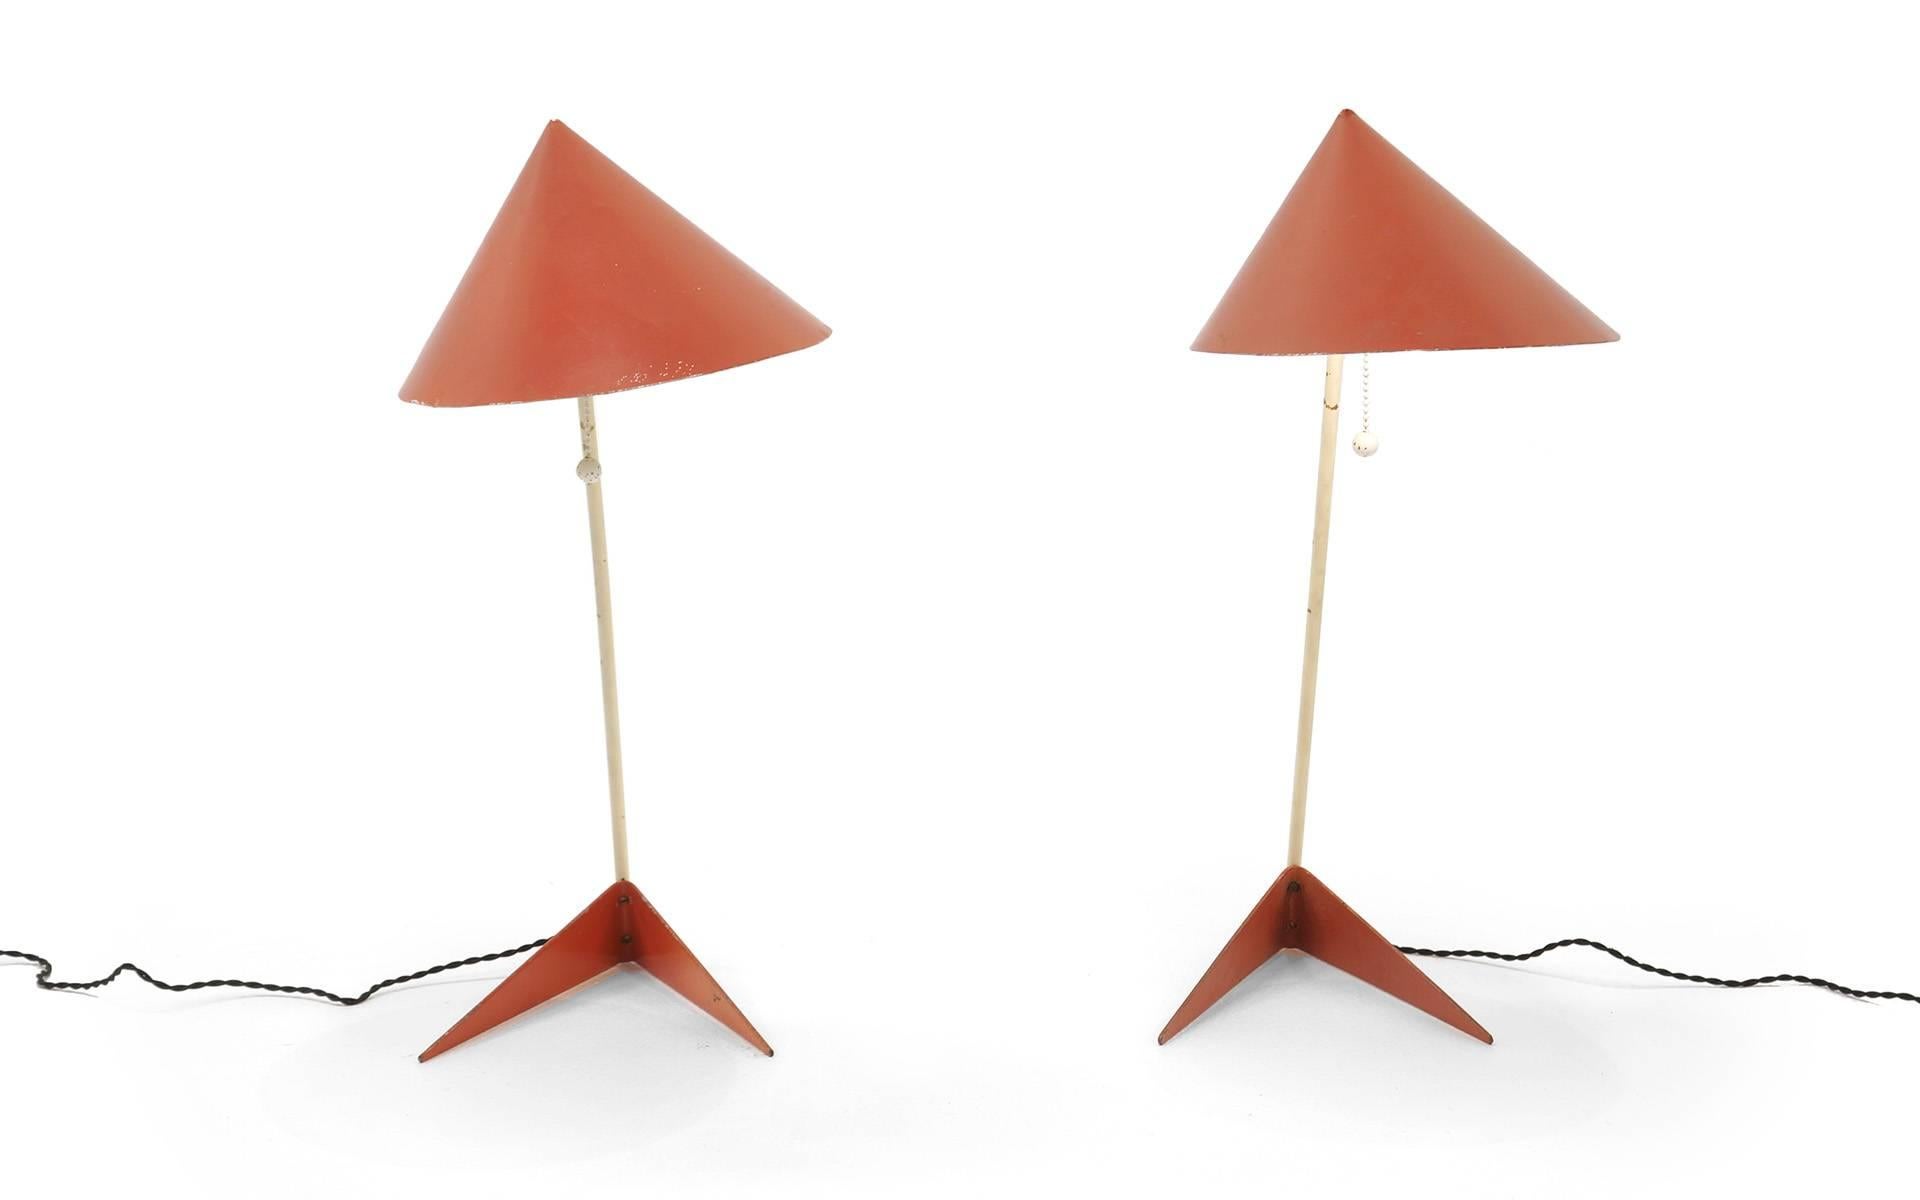 Exceptionnelle paire de lampes de table conçue par Svend Aage Holm Sorensen. Ils sont entièrement d'origine et présentent une usure attrayante.